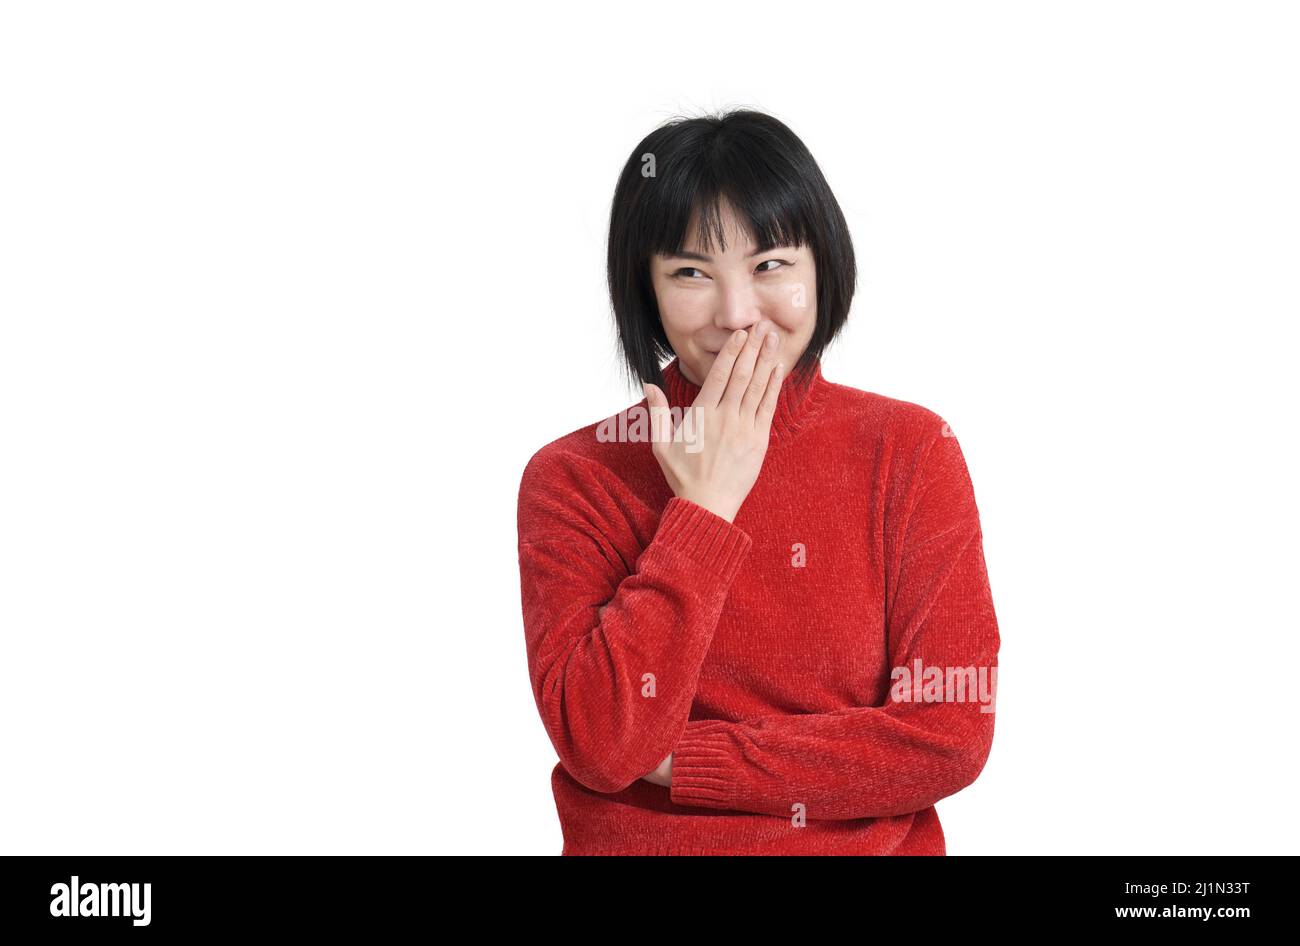 Junge asiatische Frau lachend und kichernd bedeckt den Mund mit einer Hand, isoliert Stockfoto